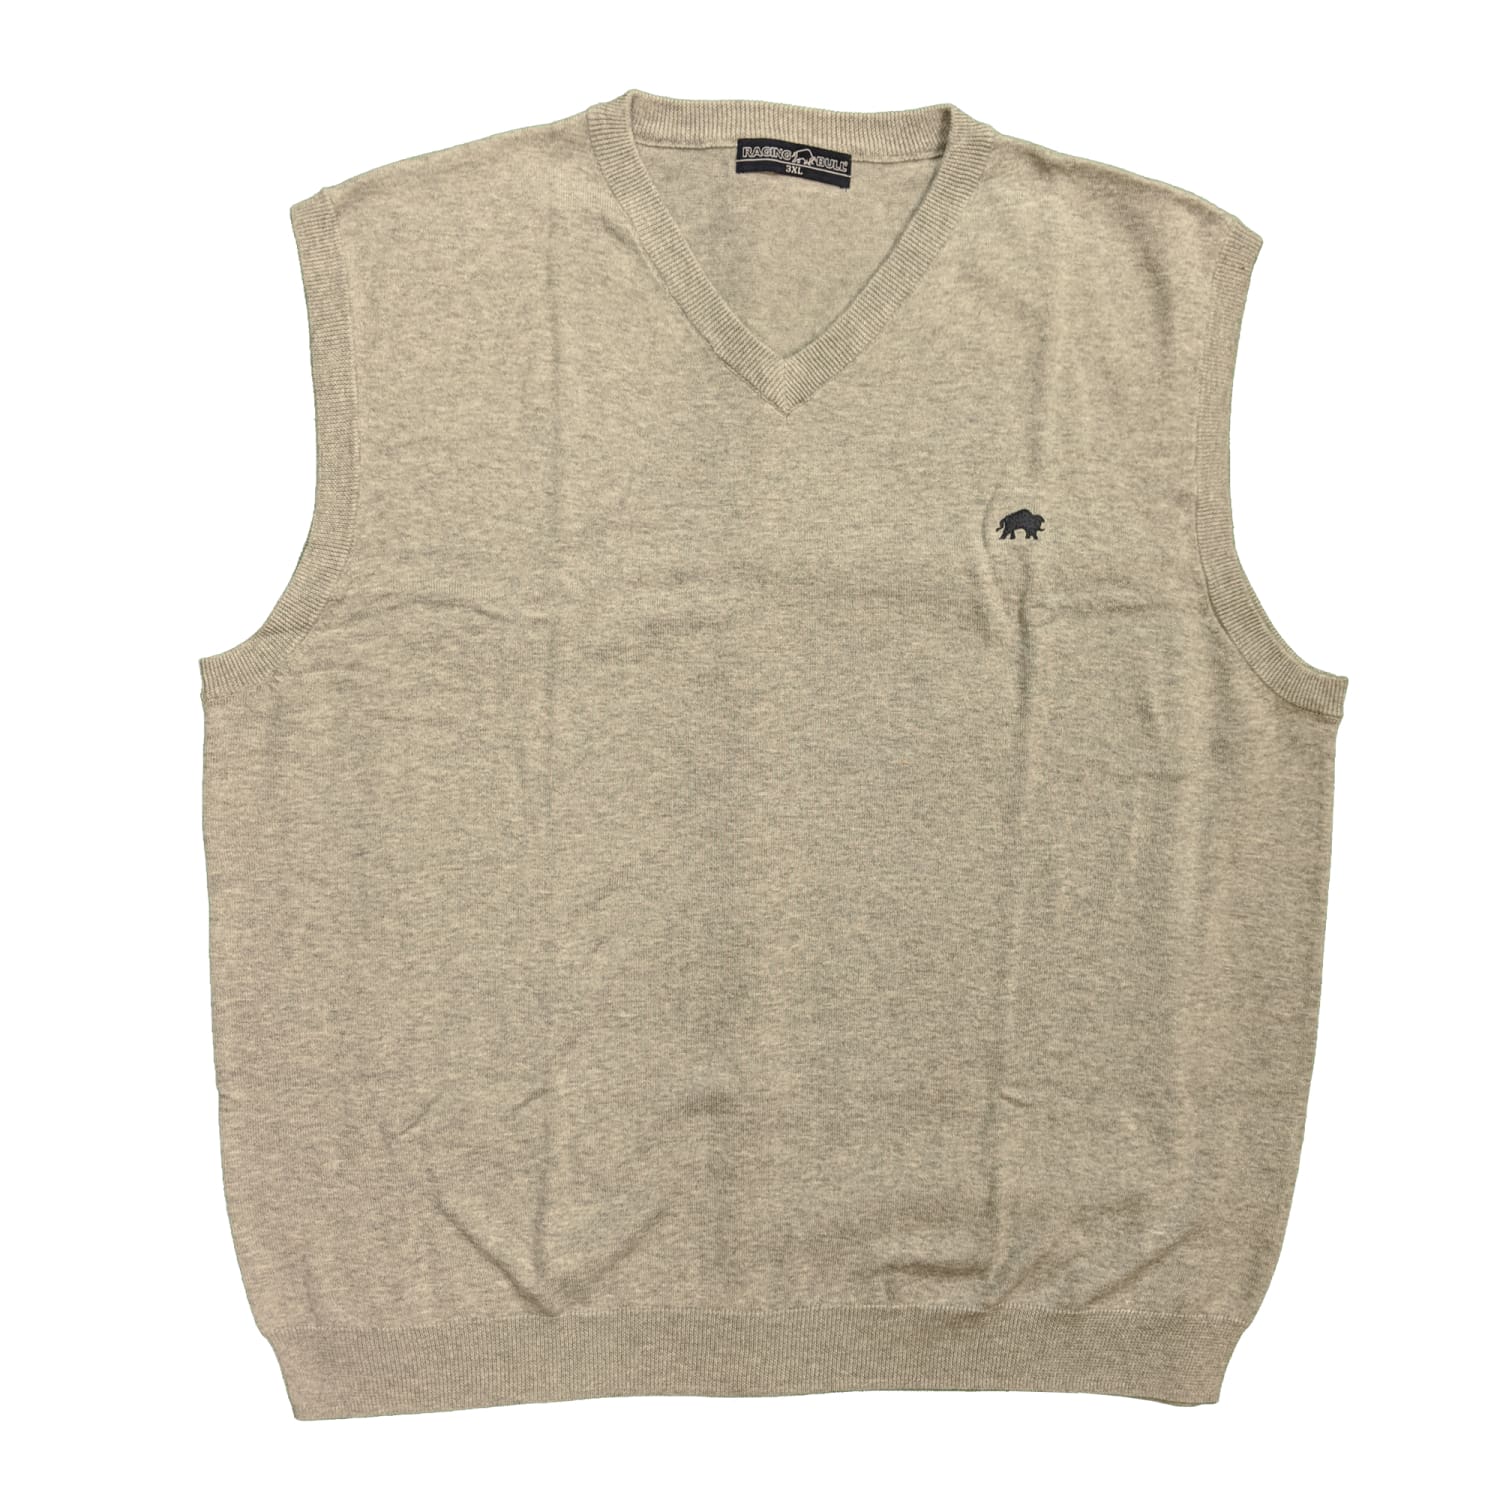 Raging Bull Sleeveless Sweater - S1447 - Grey 1